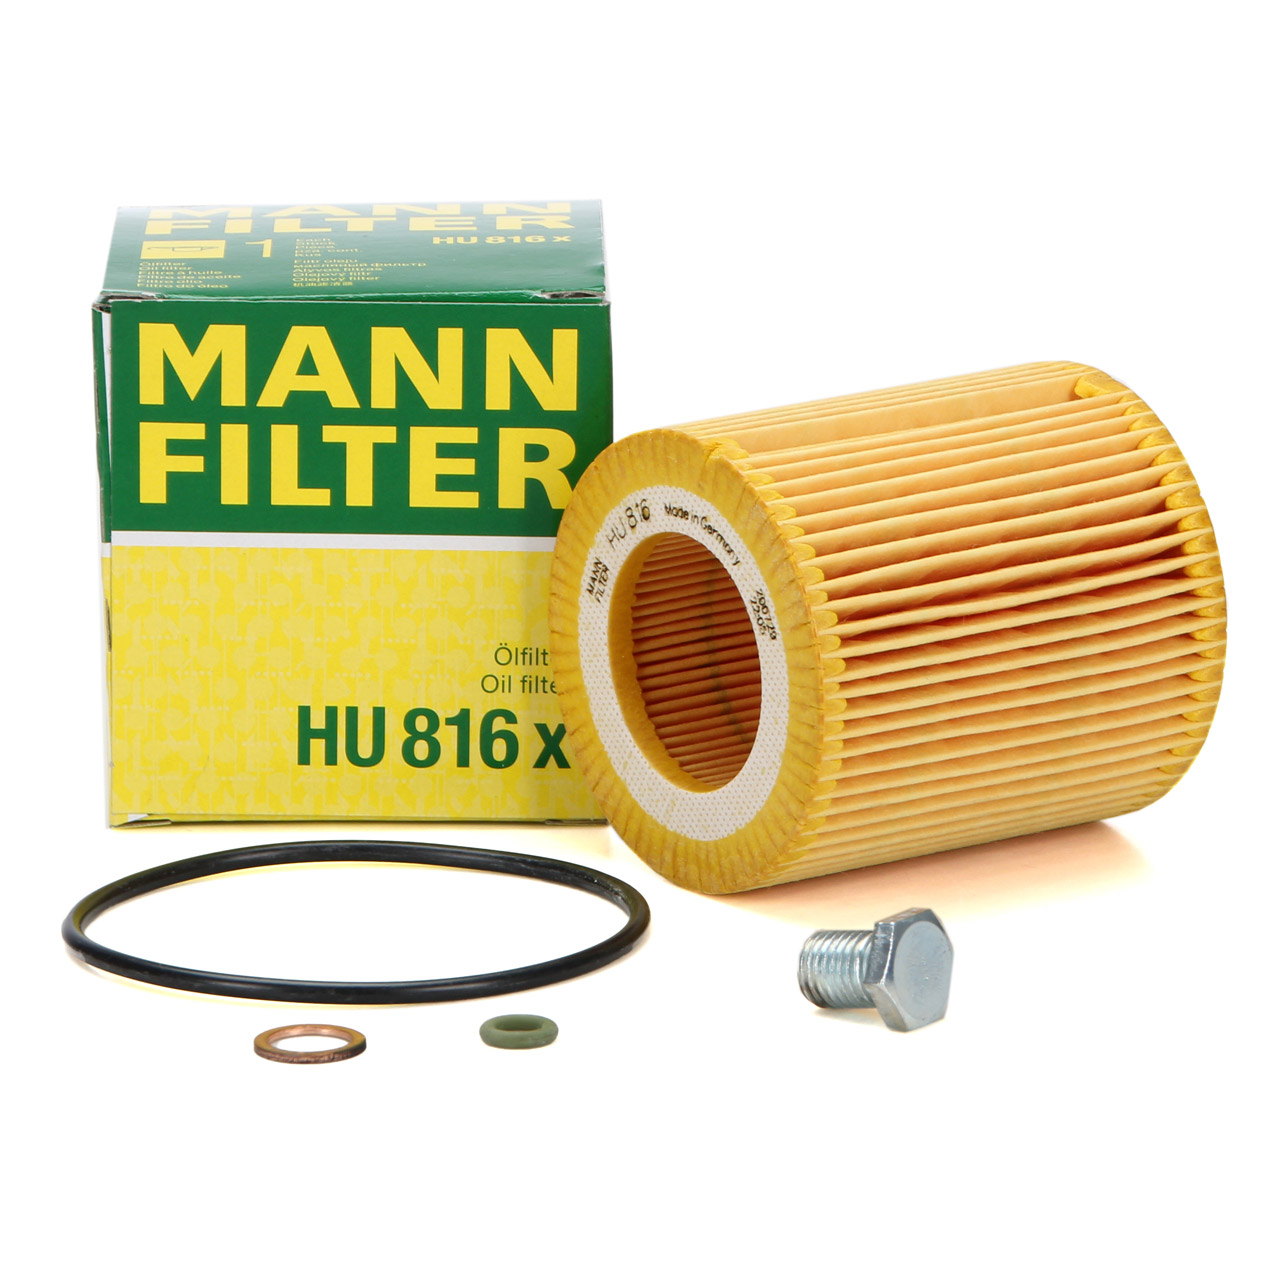 MANN HU816x Ölfilter + Schraube BMW E81-88 E90-93 F30 F31 E60 E61 N52 N53 N54 N55